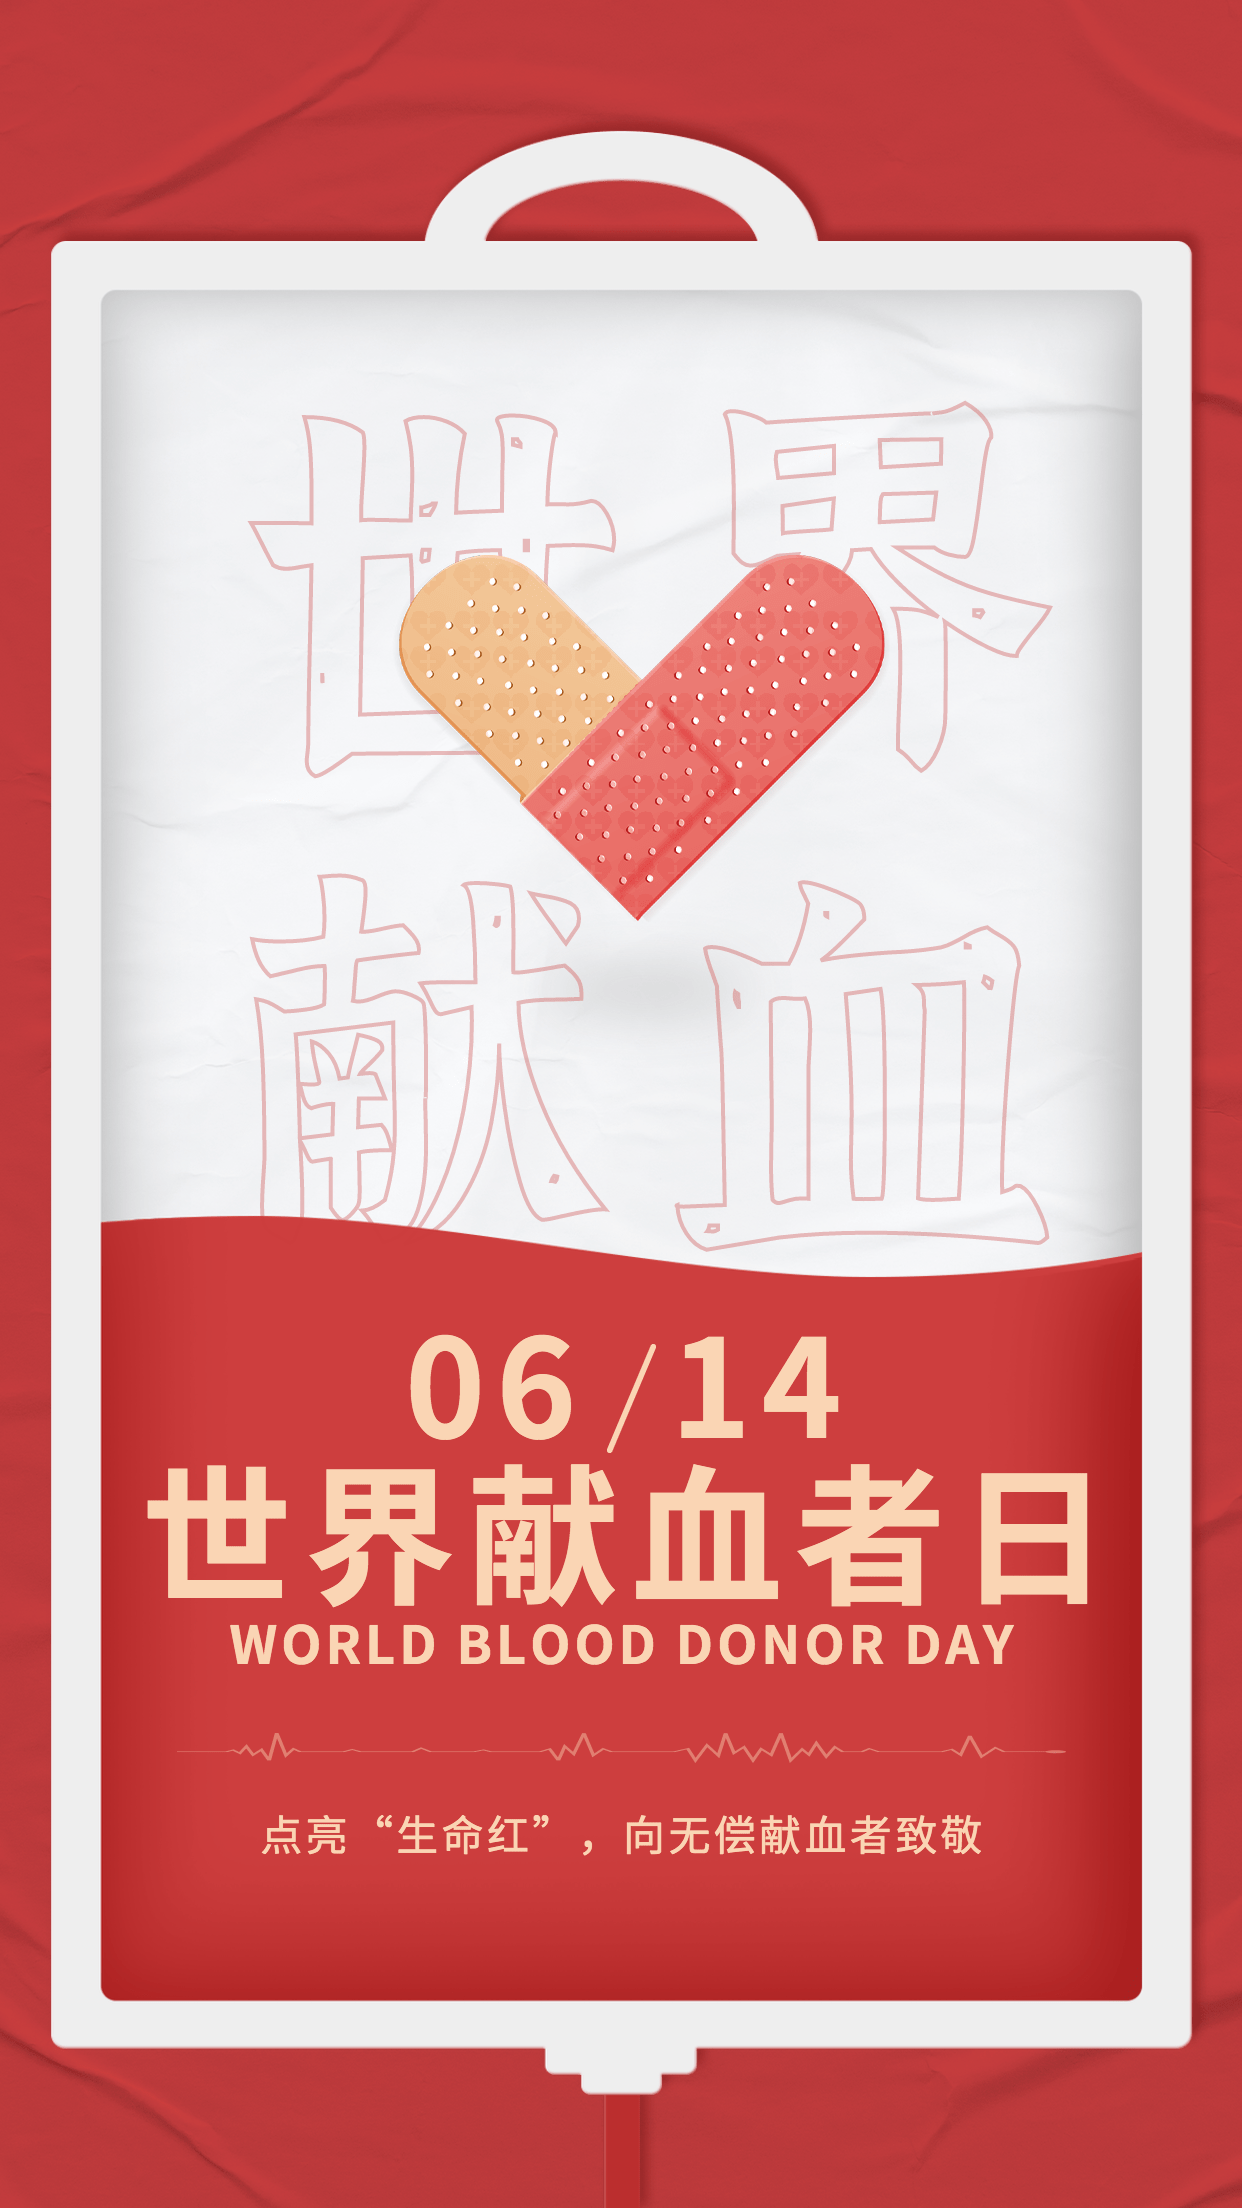 世界献血日节日宣传手机海报预览效果